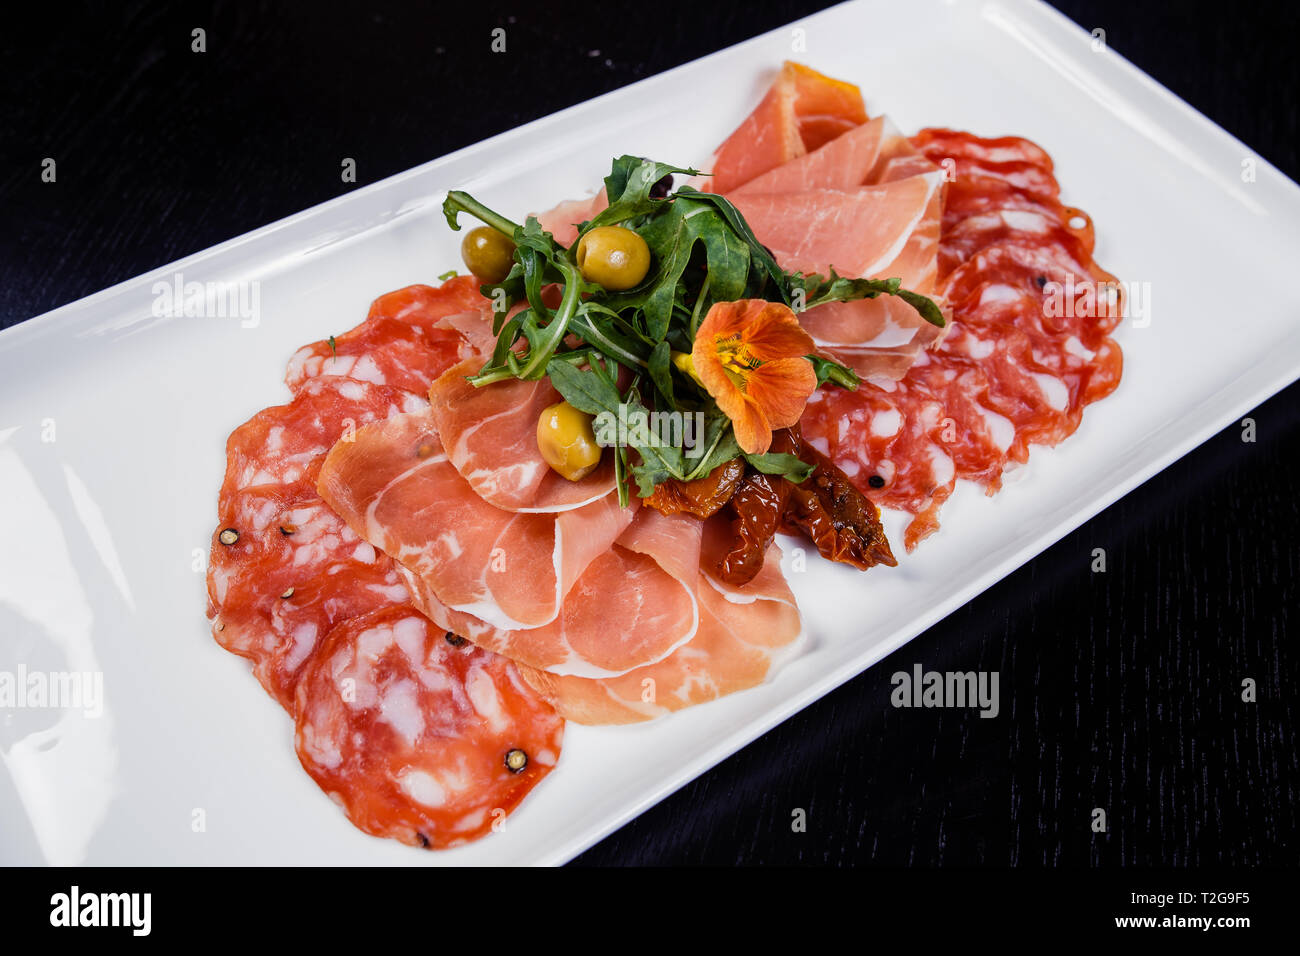 Assiette de viande charcuterie italienne - jambon prosciutto, bresaola,  pancetta, salami et parmesan Photo Stock - Alamy